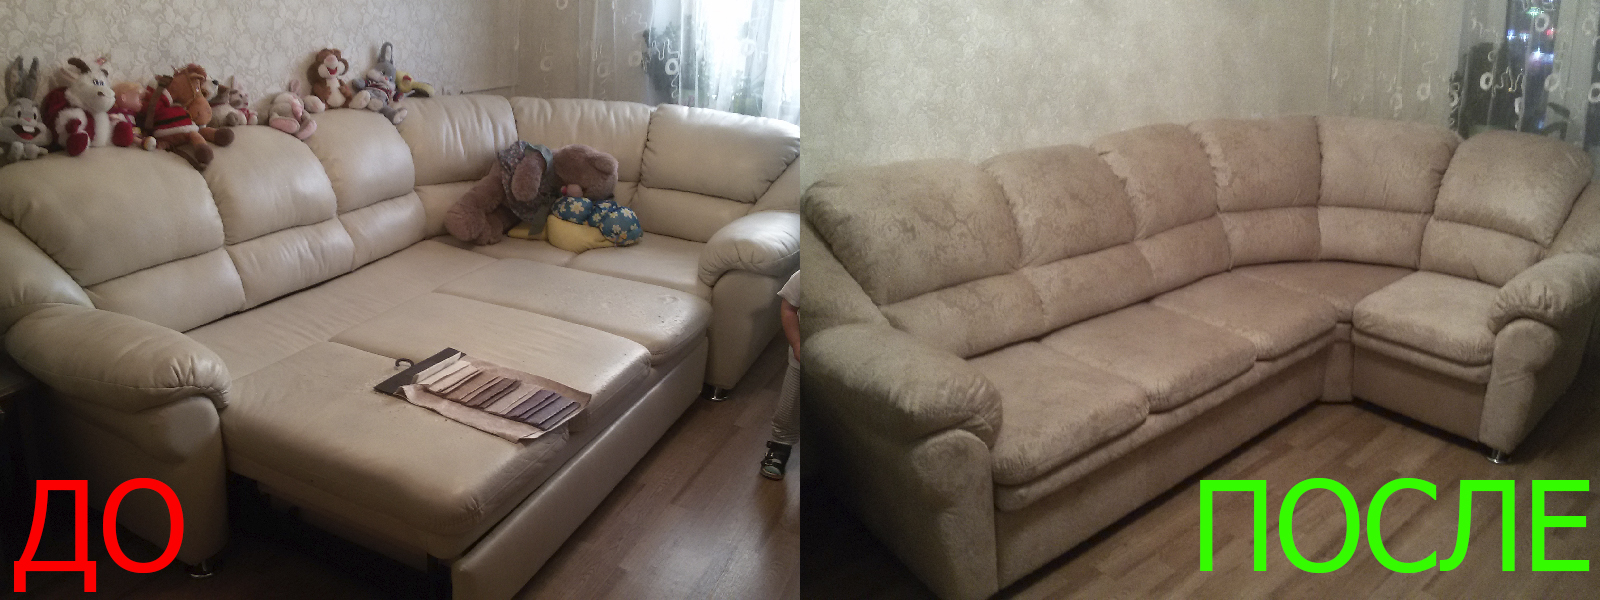 Ремонт диванов искусственной кожей в Казани от опытных мастеров компании MebelProfi - 100% гарантия